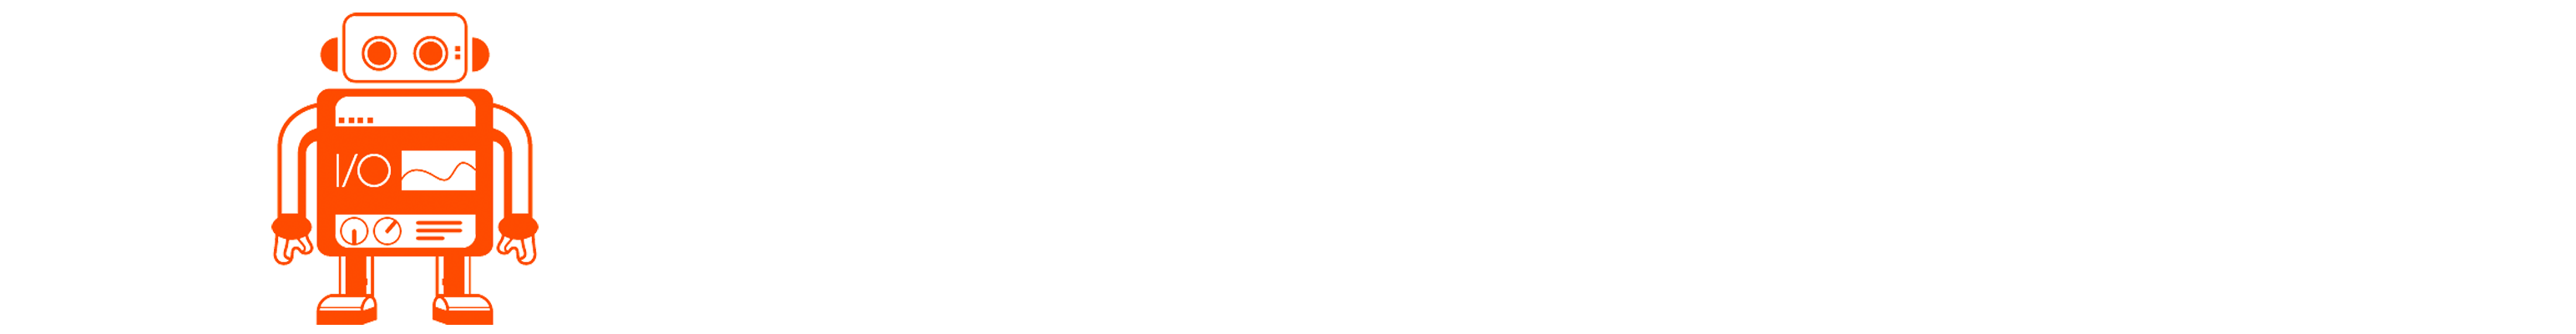 WebdriverIO logo